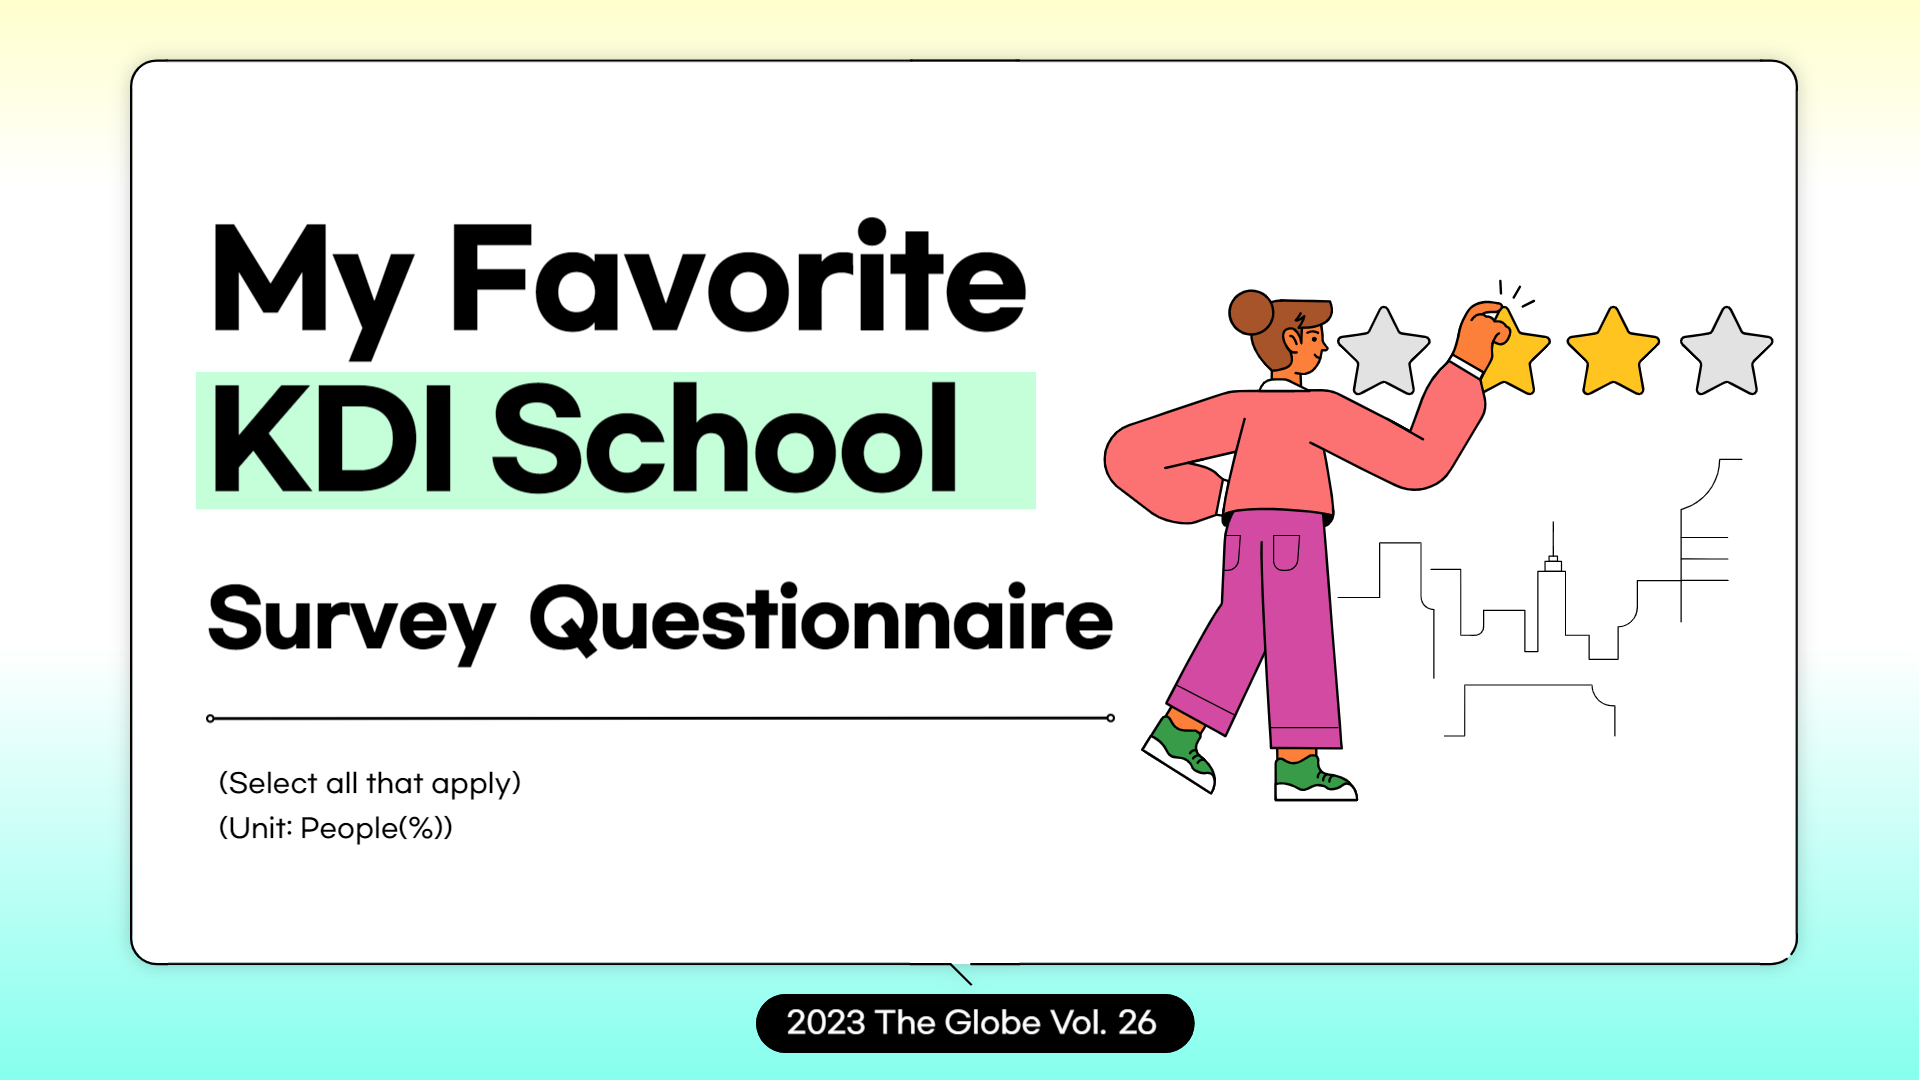 My Favorite KDI School: Survey Questionnaire